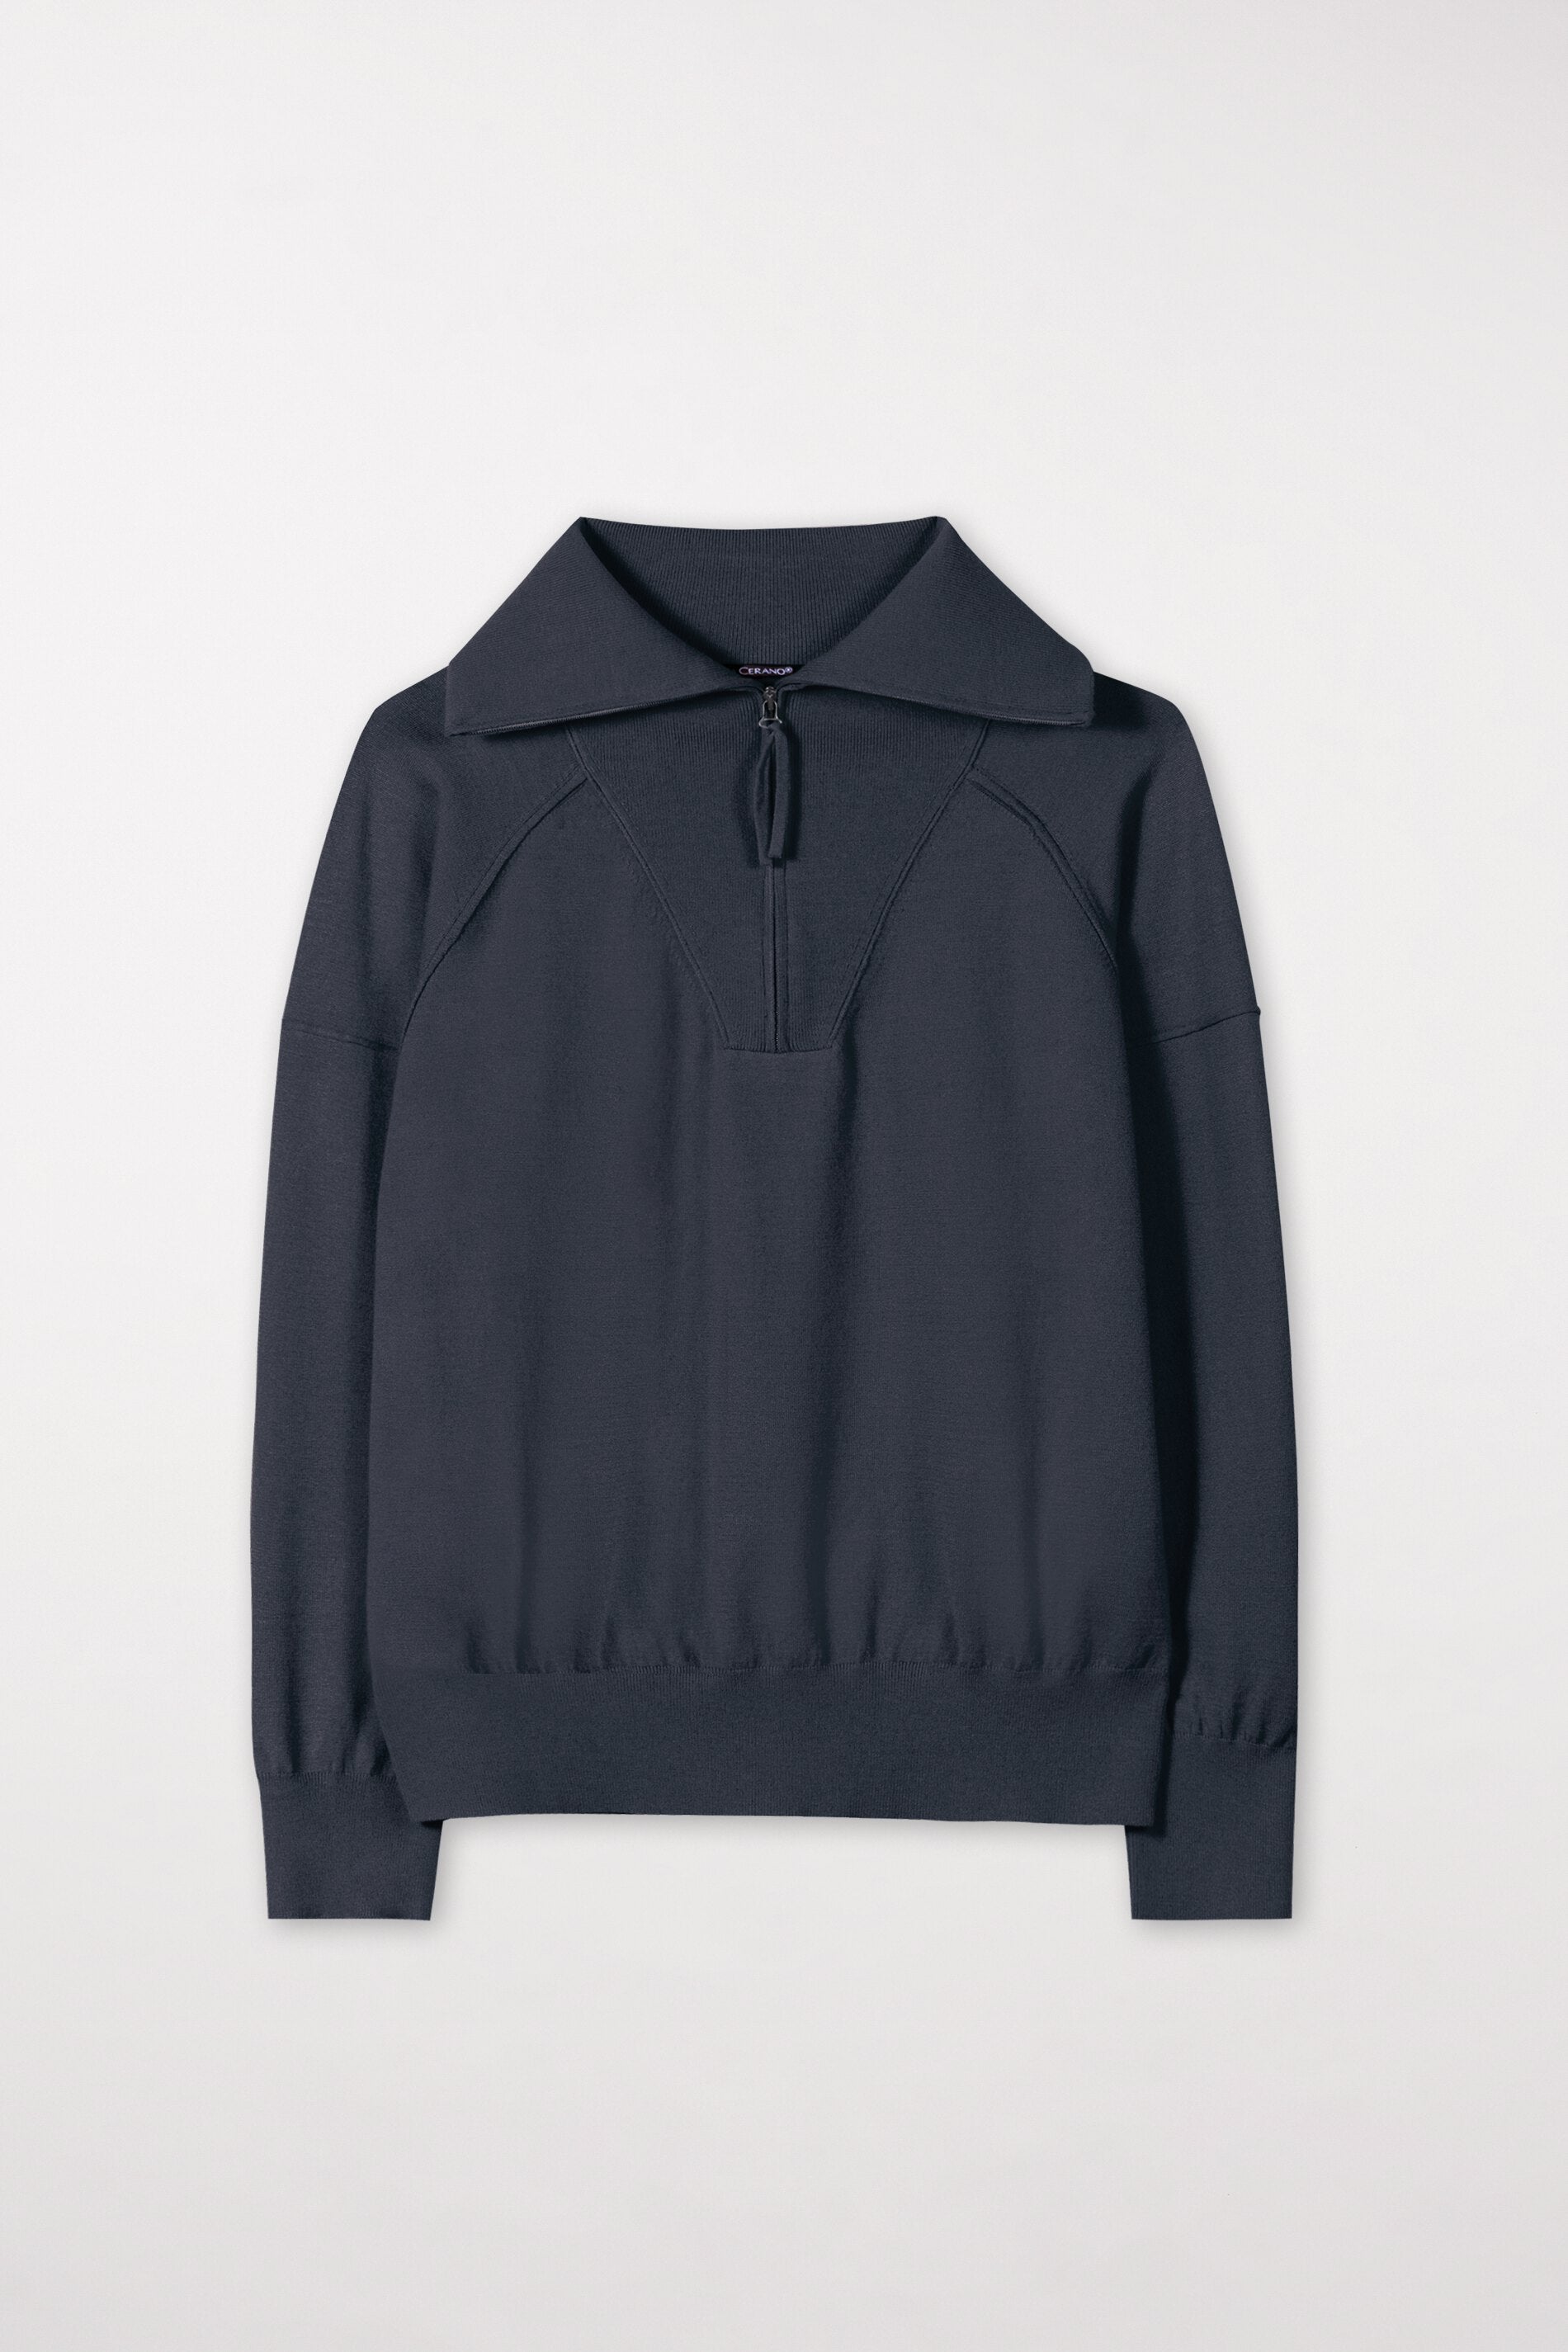 LUISA CERANO-OUTLET-SALE-Pullover mit Sweatdetails-Strick-34-bluish grey-by-ARCHIVIST